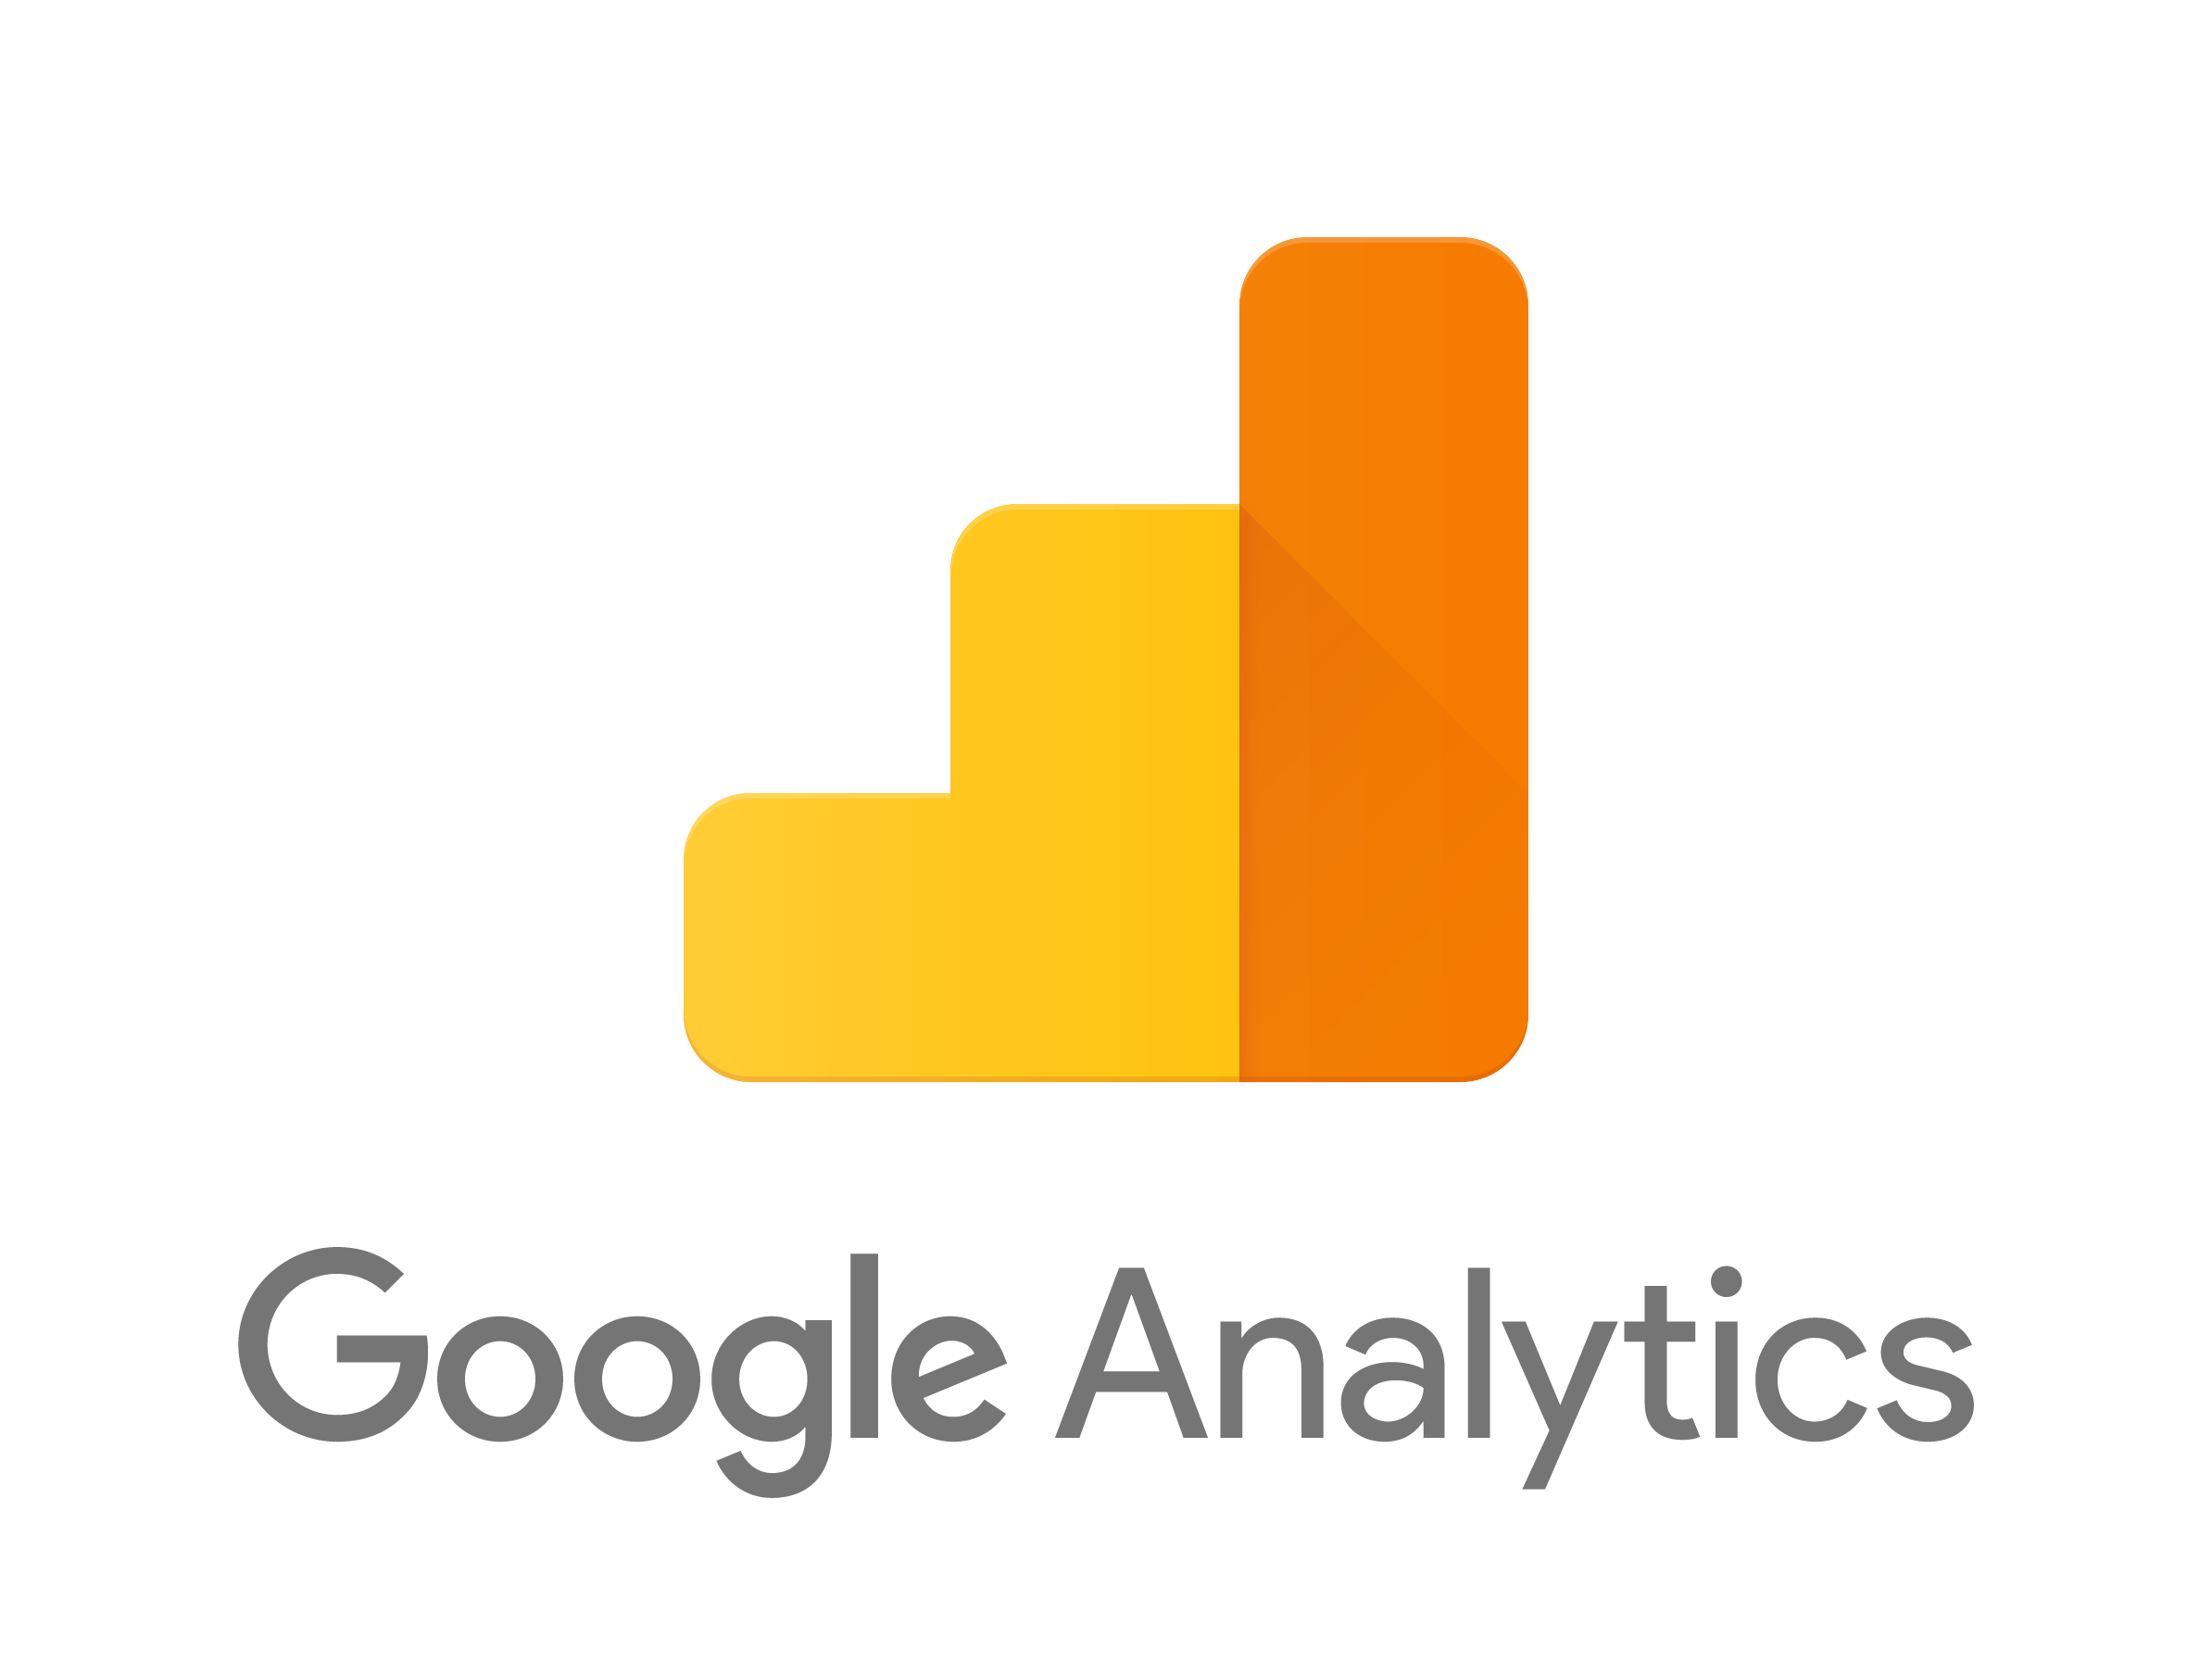 What Are Google Analytics?